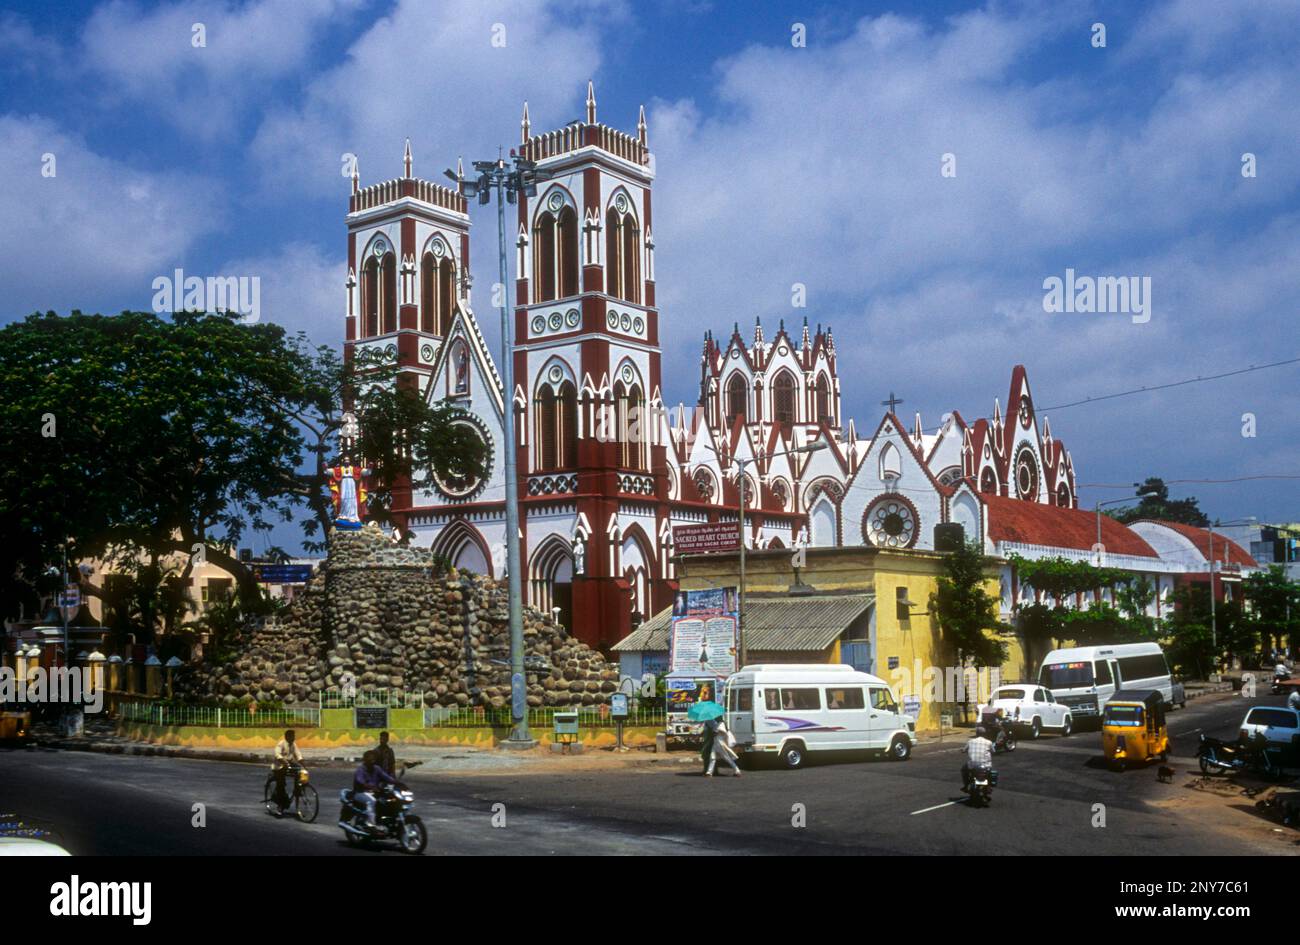 Basilica del Sacro cuore di Gesù Cristo a Pudicherry Pondicherry, India del Sud, Asia. Architettura gotica Revival. Cattolica romana Foto Stock